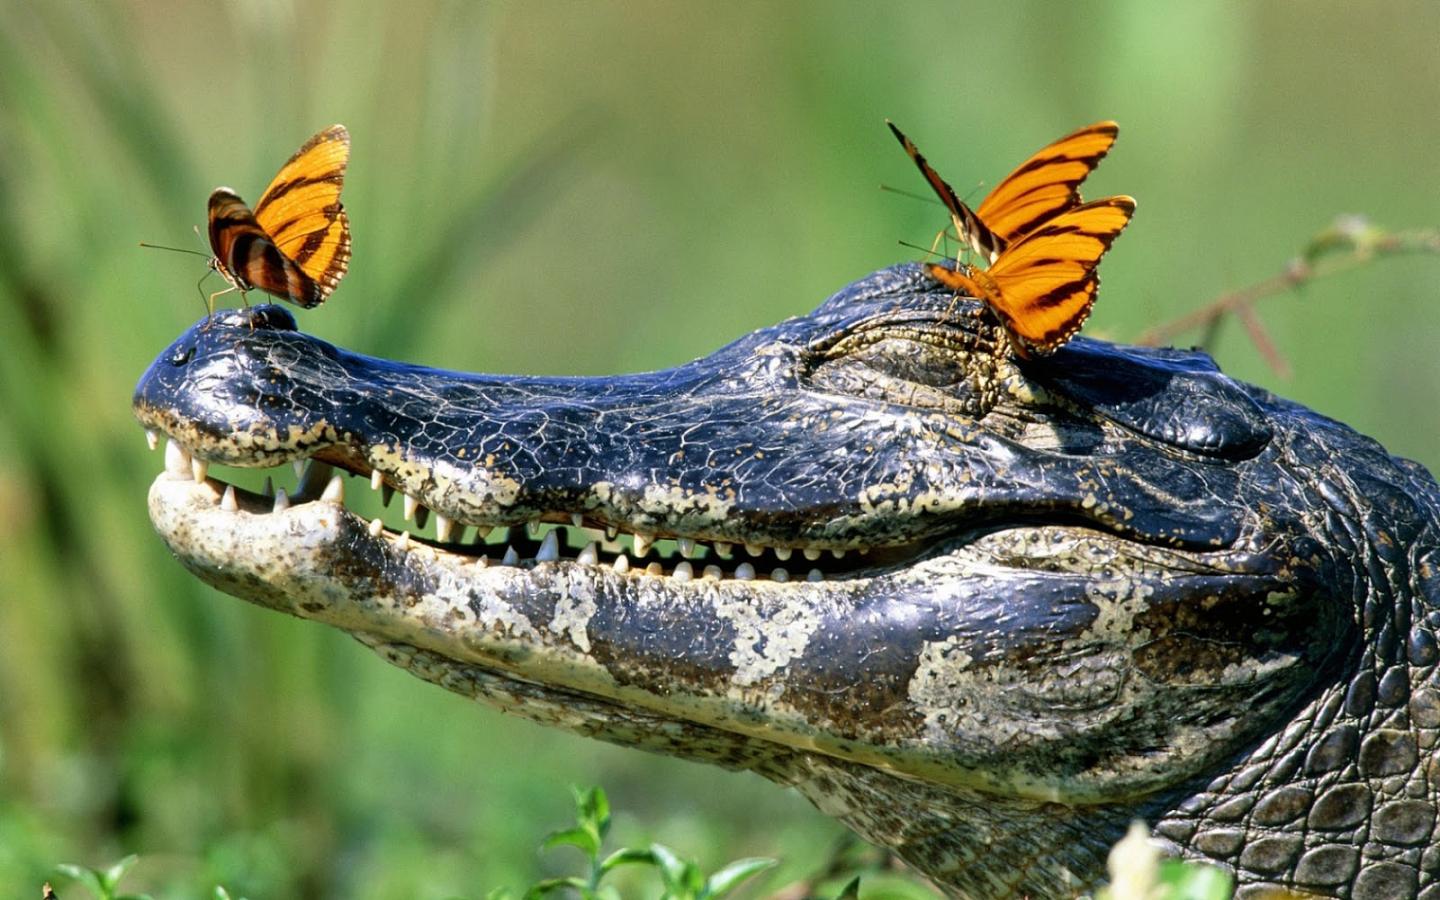 100 Alligator Pictures  Download Free Images on Unsplash